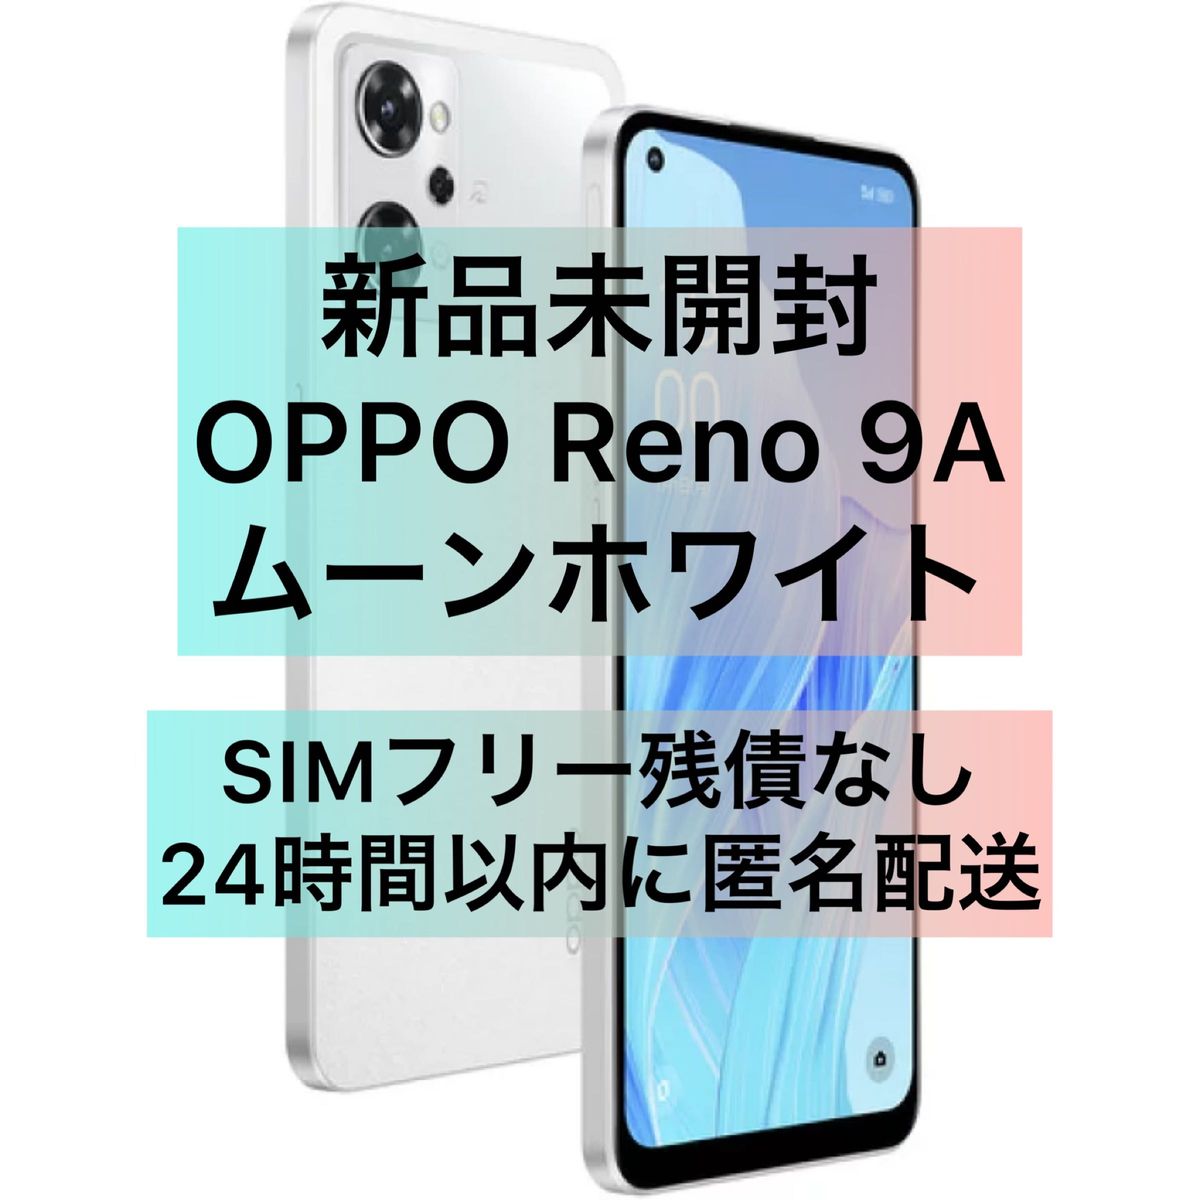 【新品未開封】OPPO Reno9 A ムーンホワイト SIMフリー デュアルSIM対応